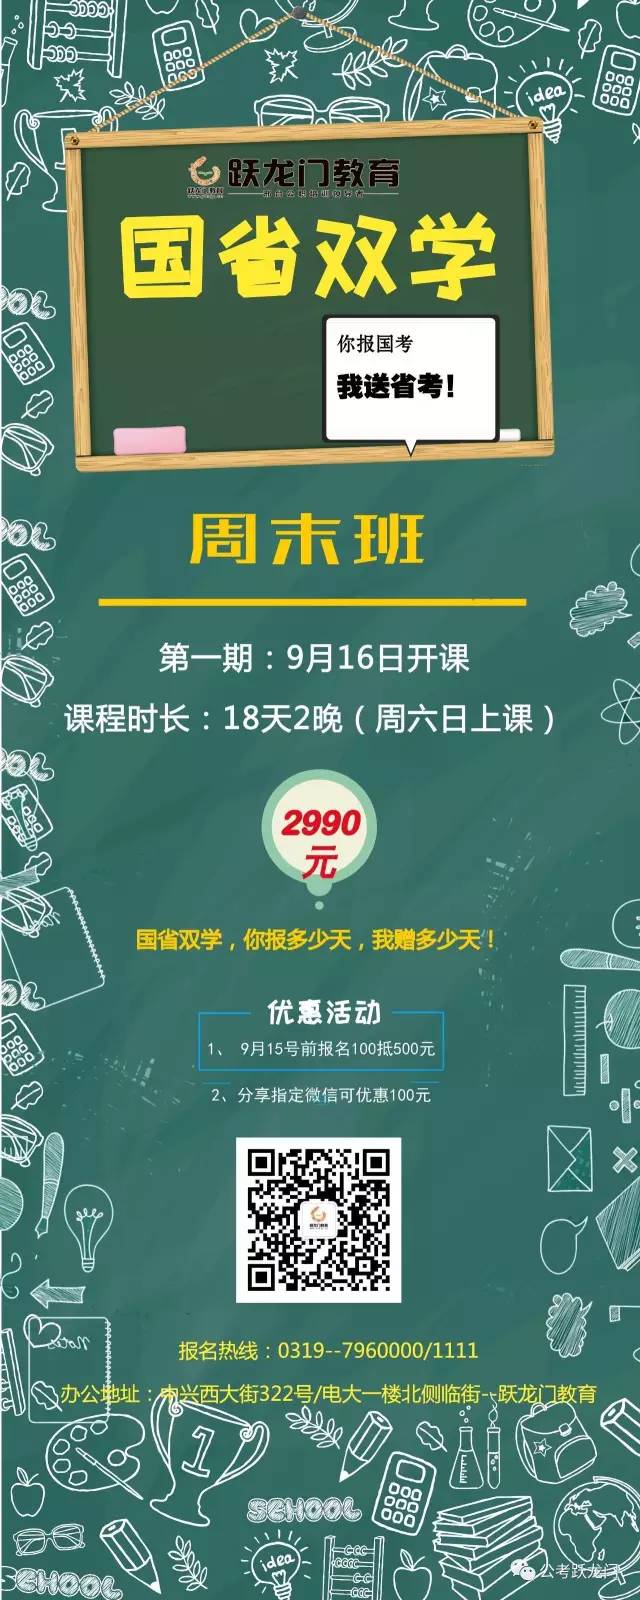 跃龙门教育2018国省双学笔试培训课程火热报名中 职业培训4